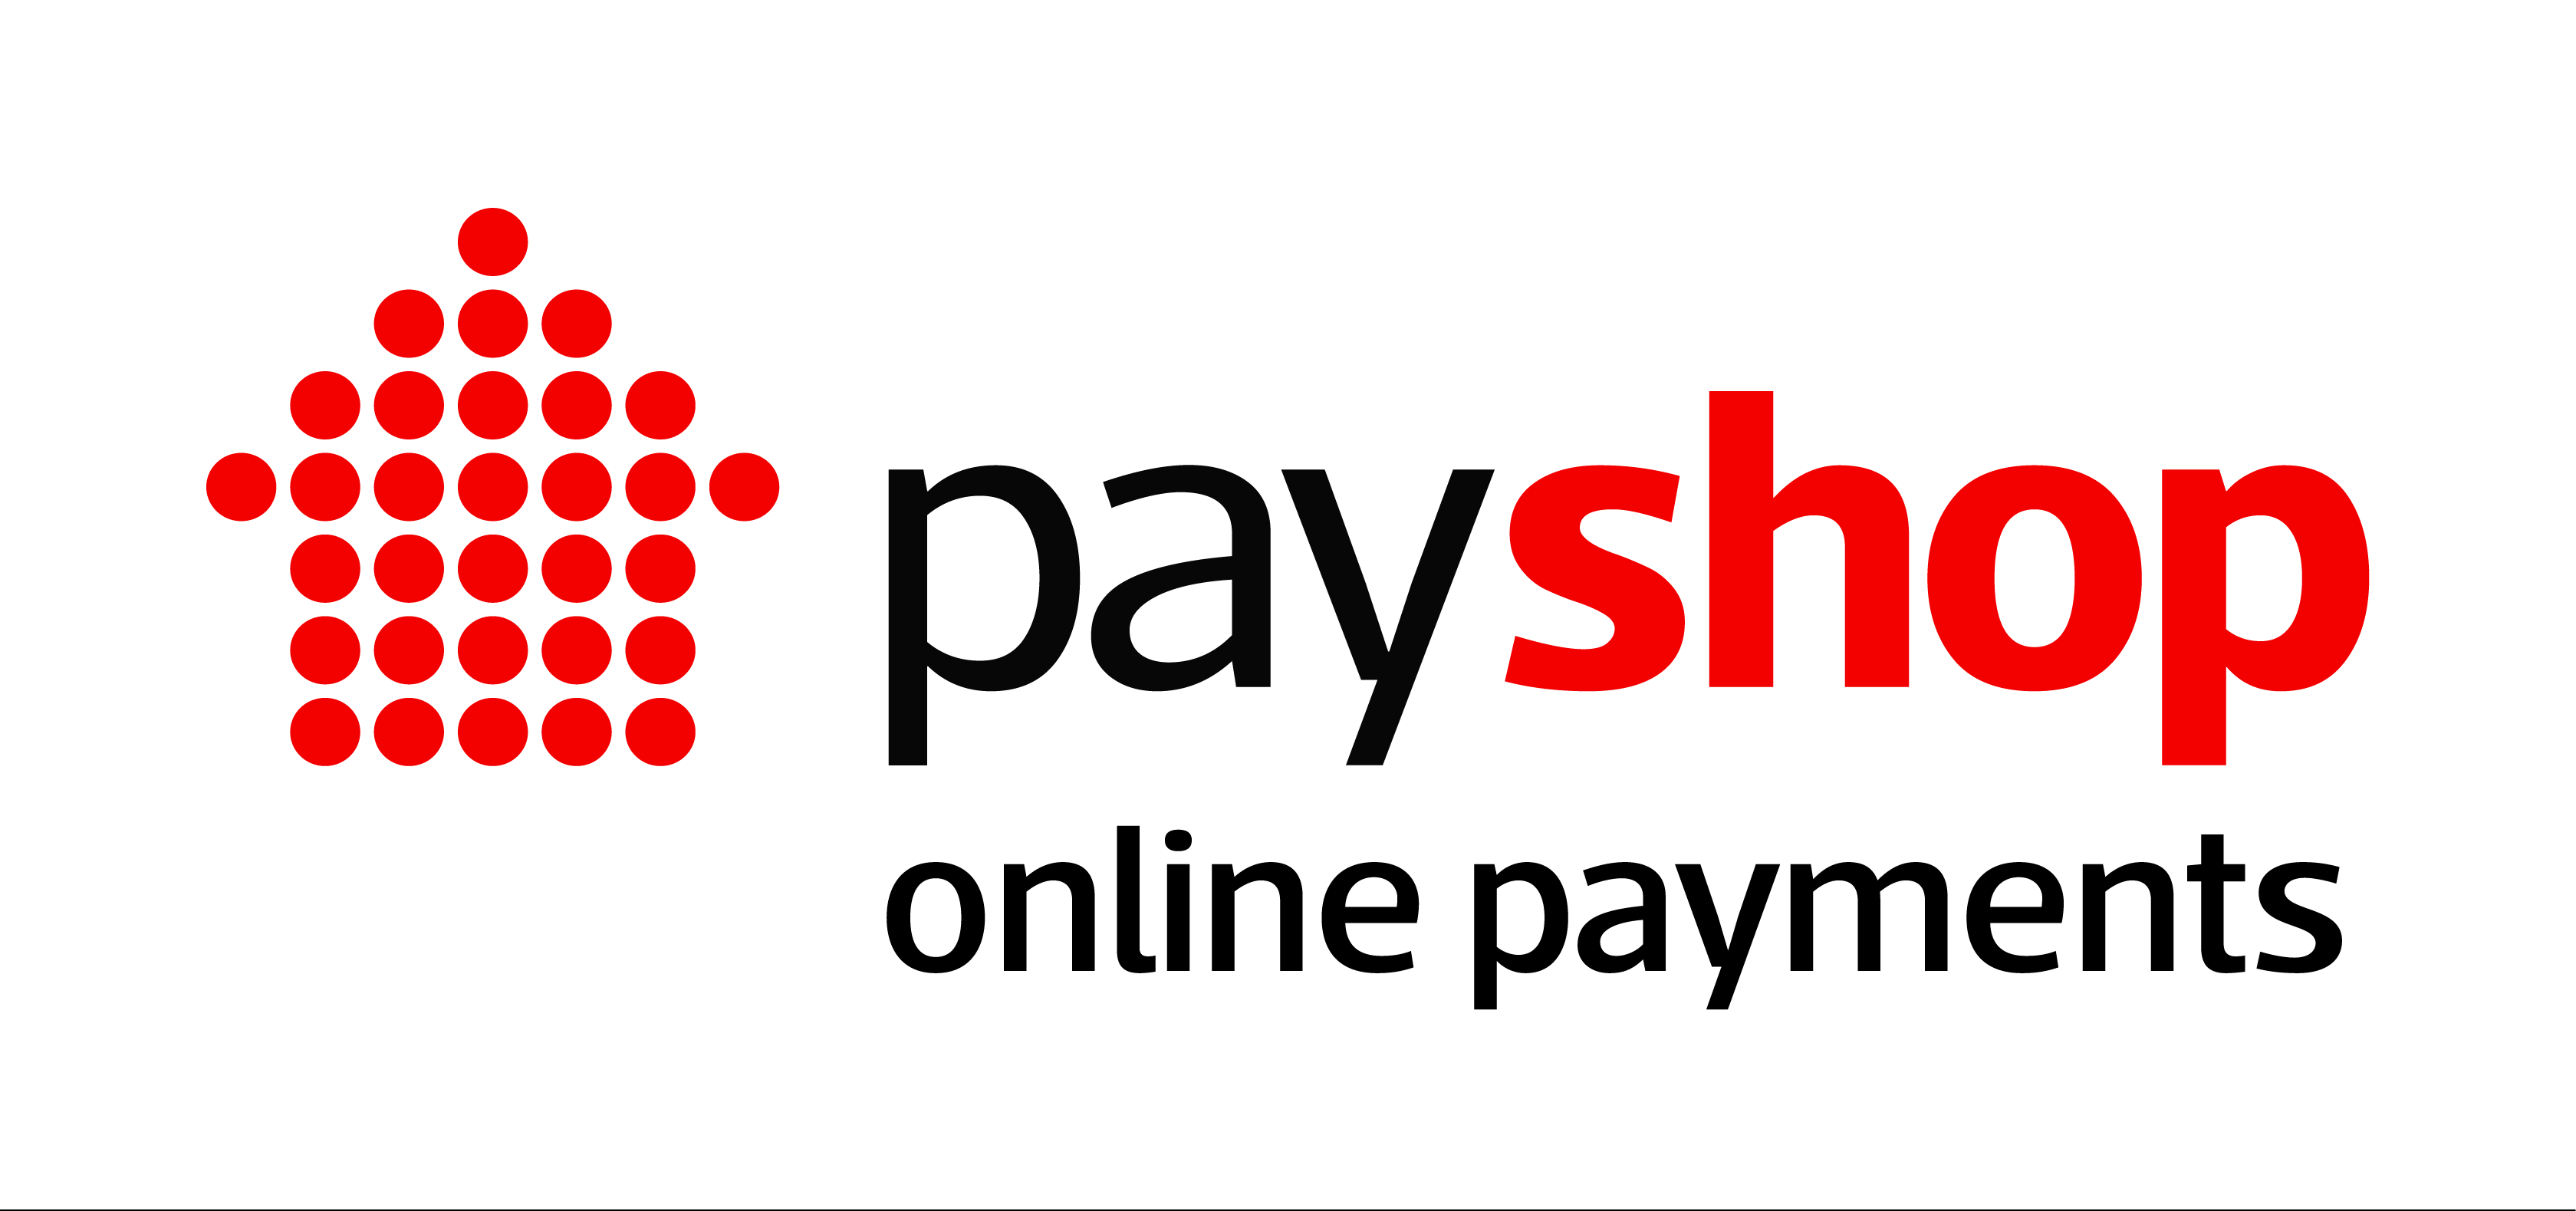 PAYSHOP_ONLINE PAYMENT LOGO HRZ